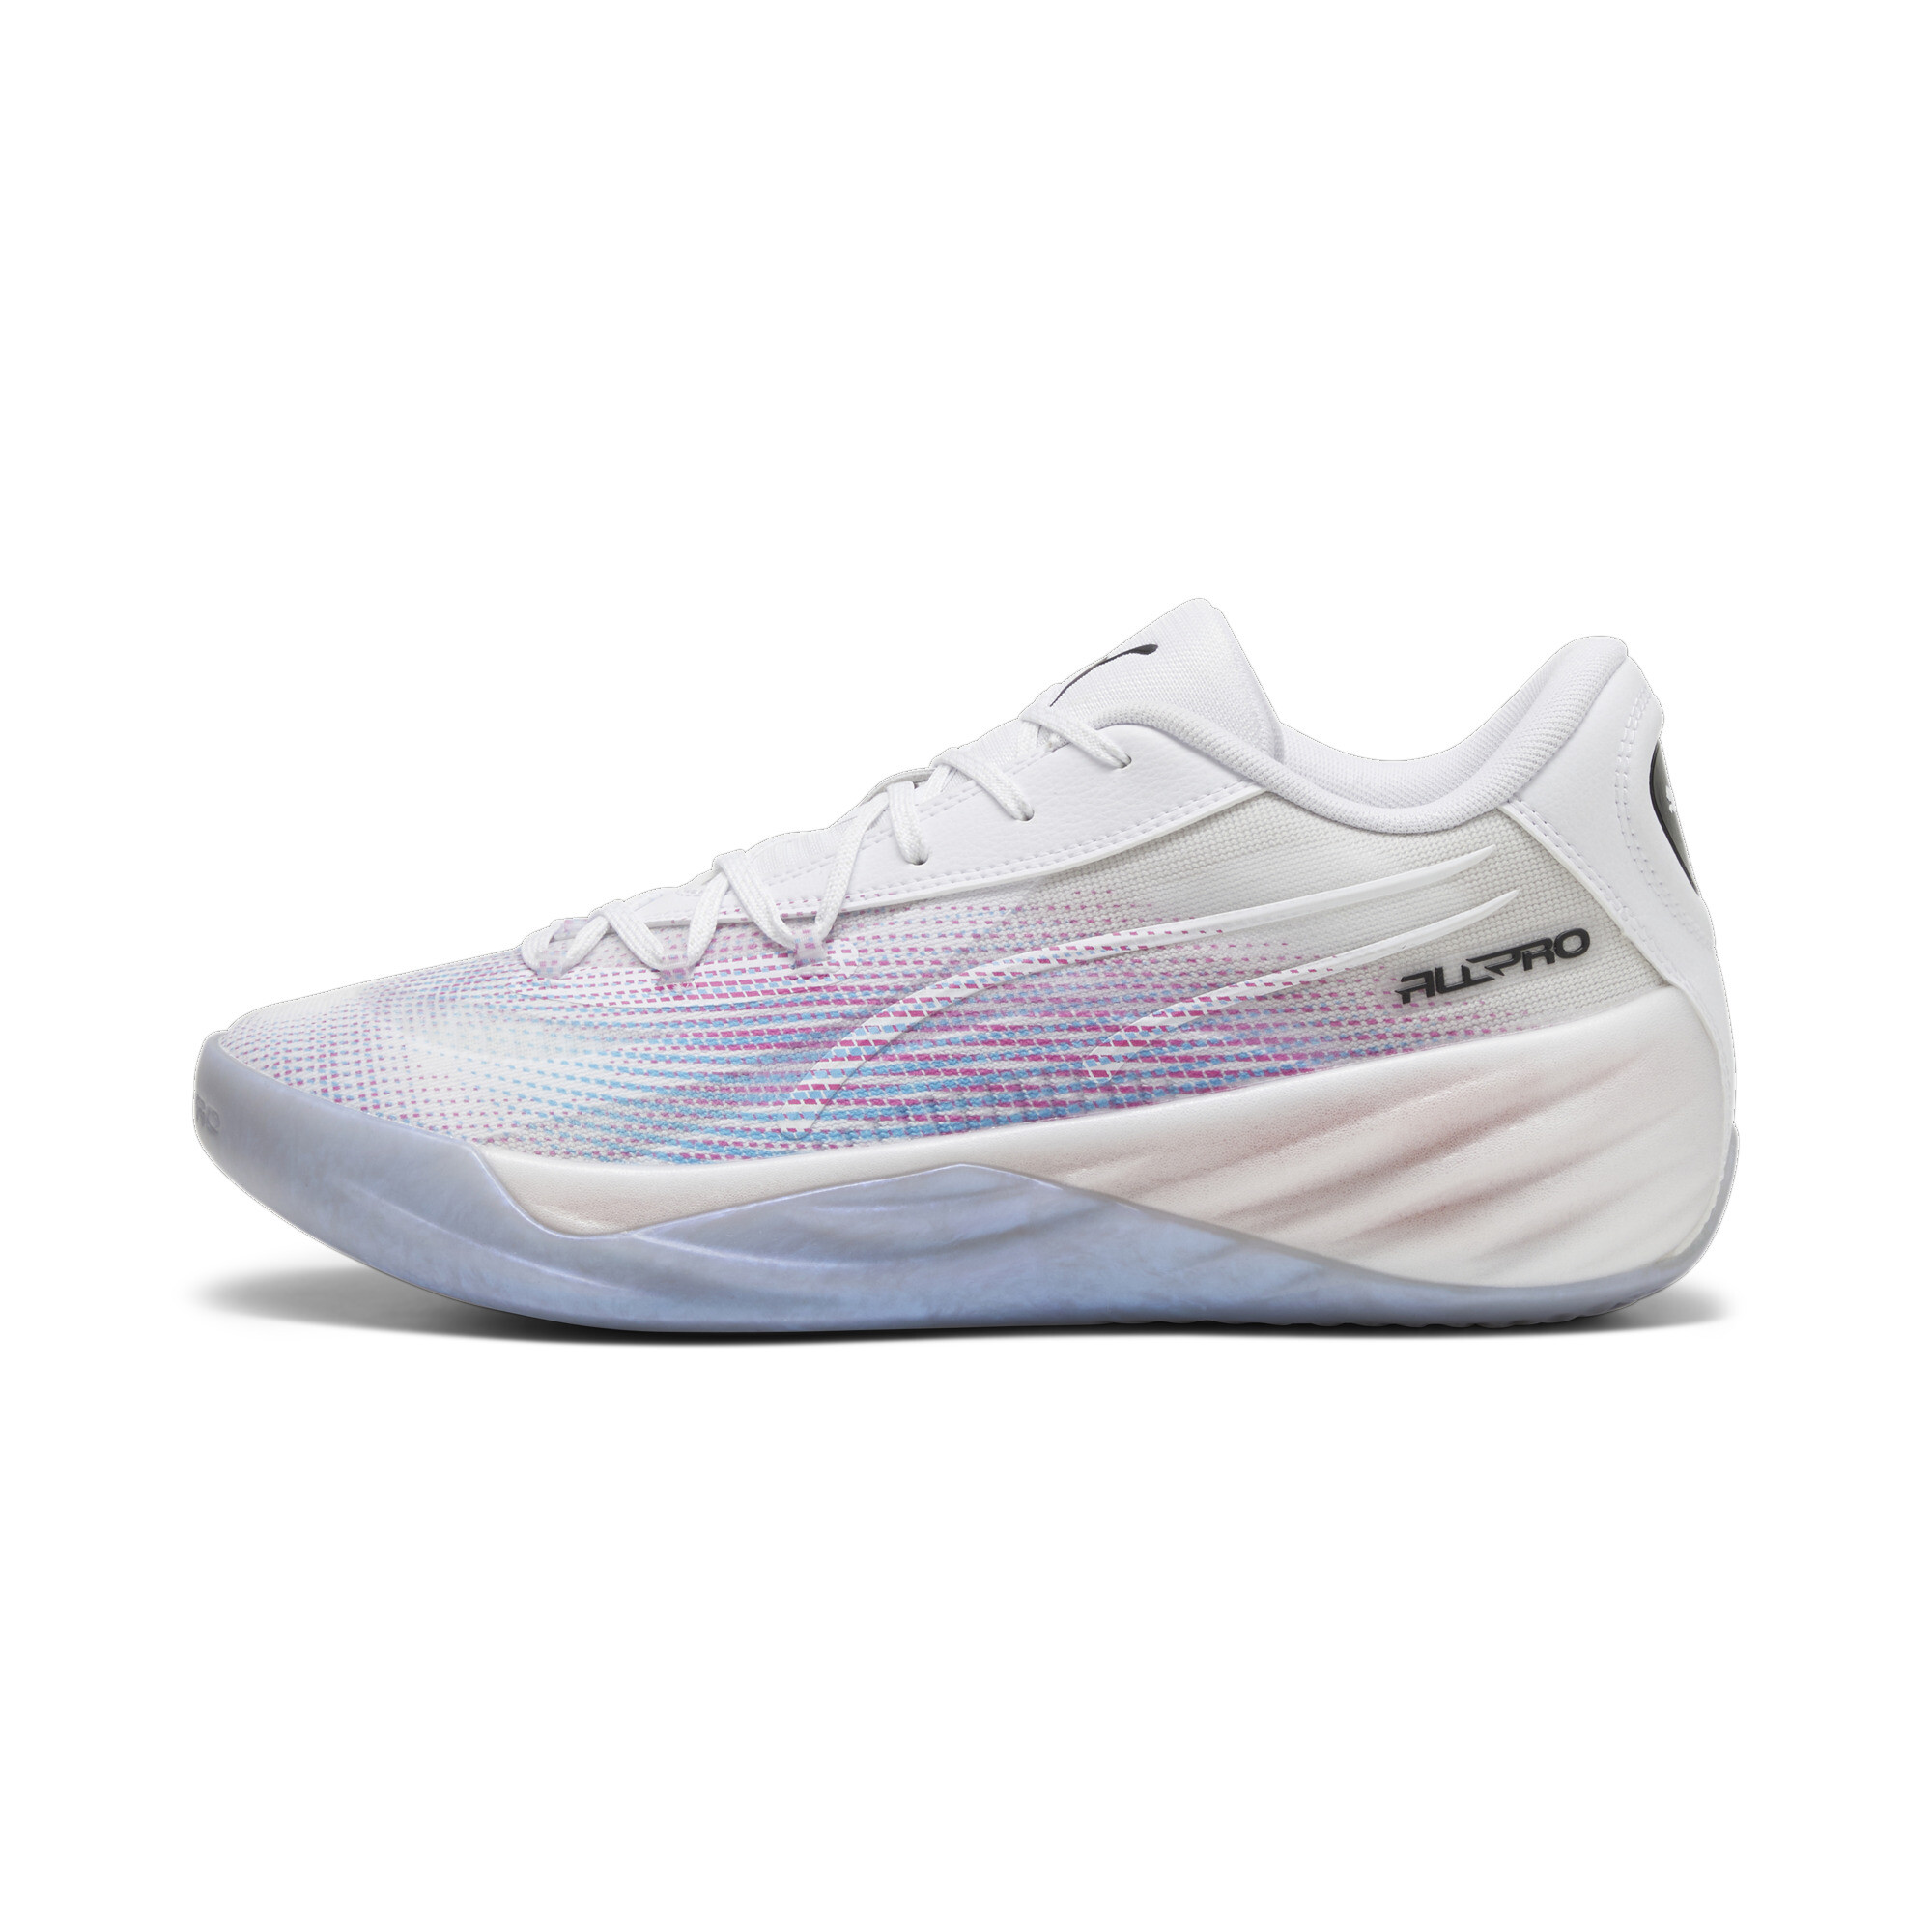 Puma All-Pro NITROâ¢ Basketball Shoes, White, Size 53.5, Shoes